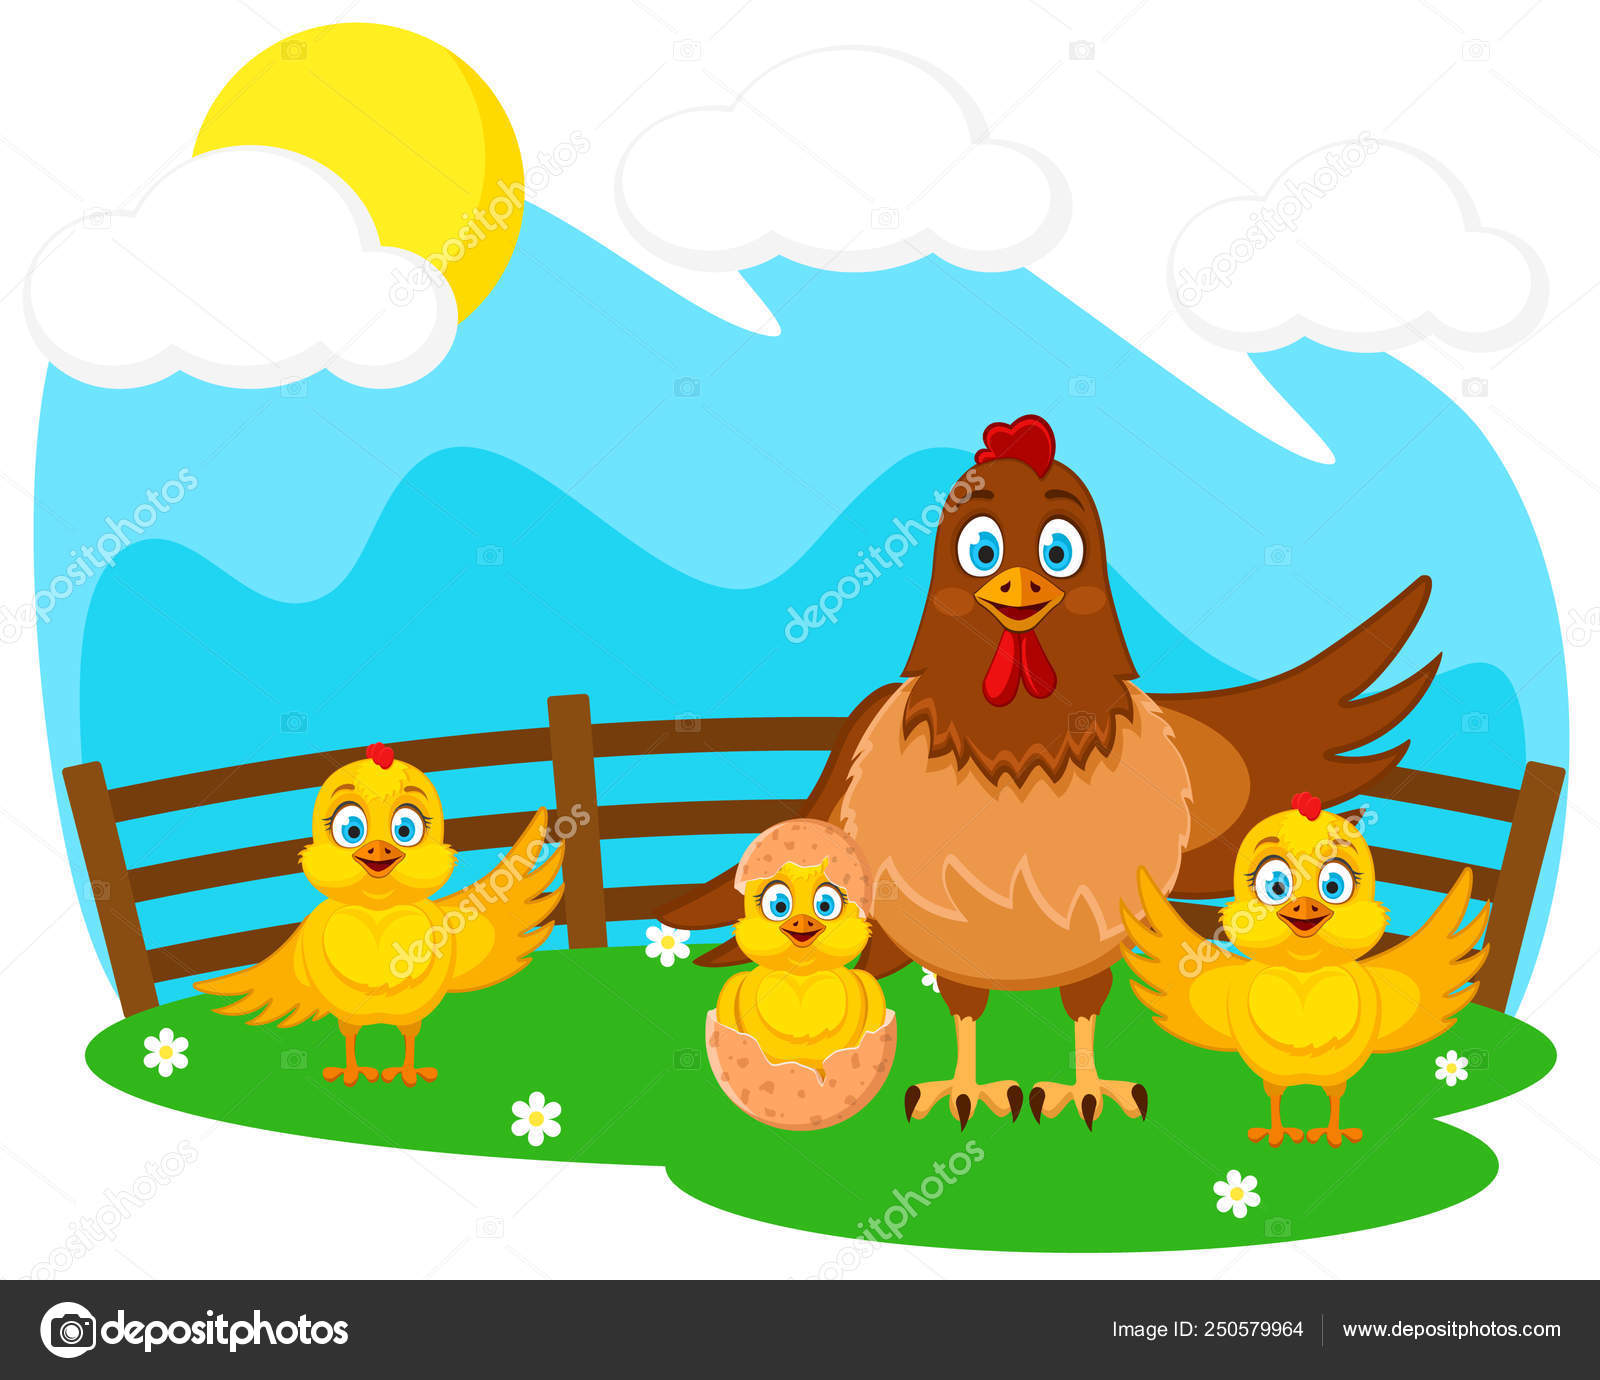 Цыплята на лугу картинка для детей